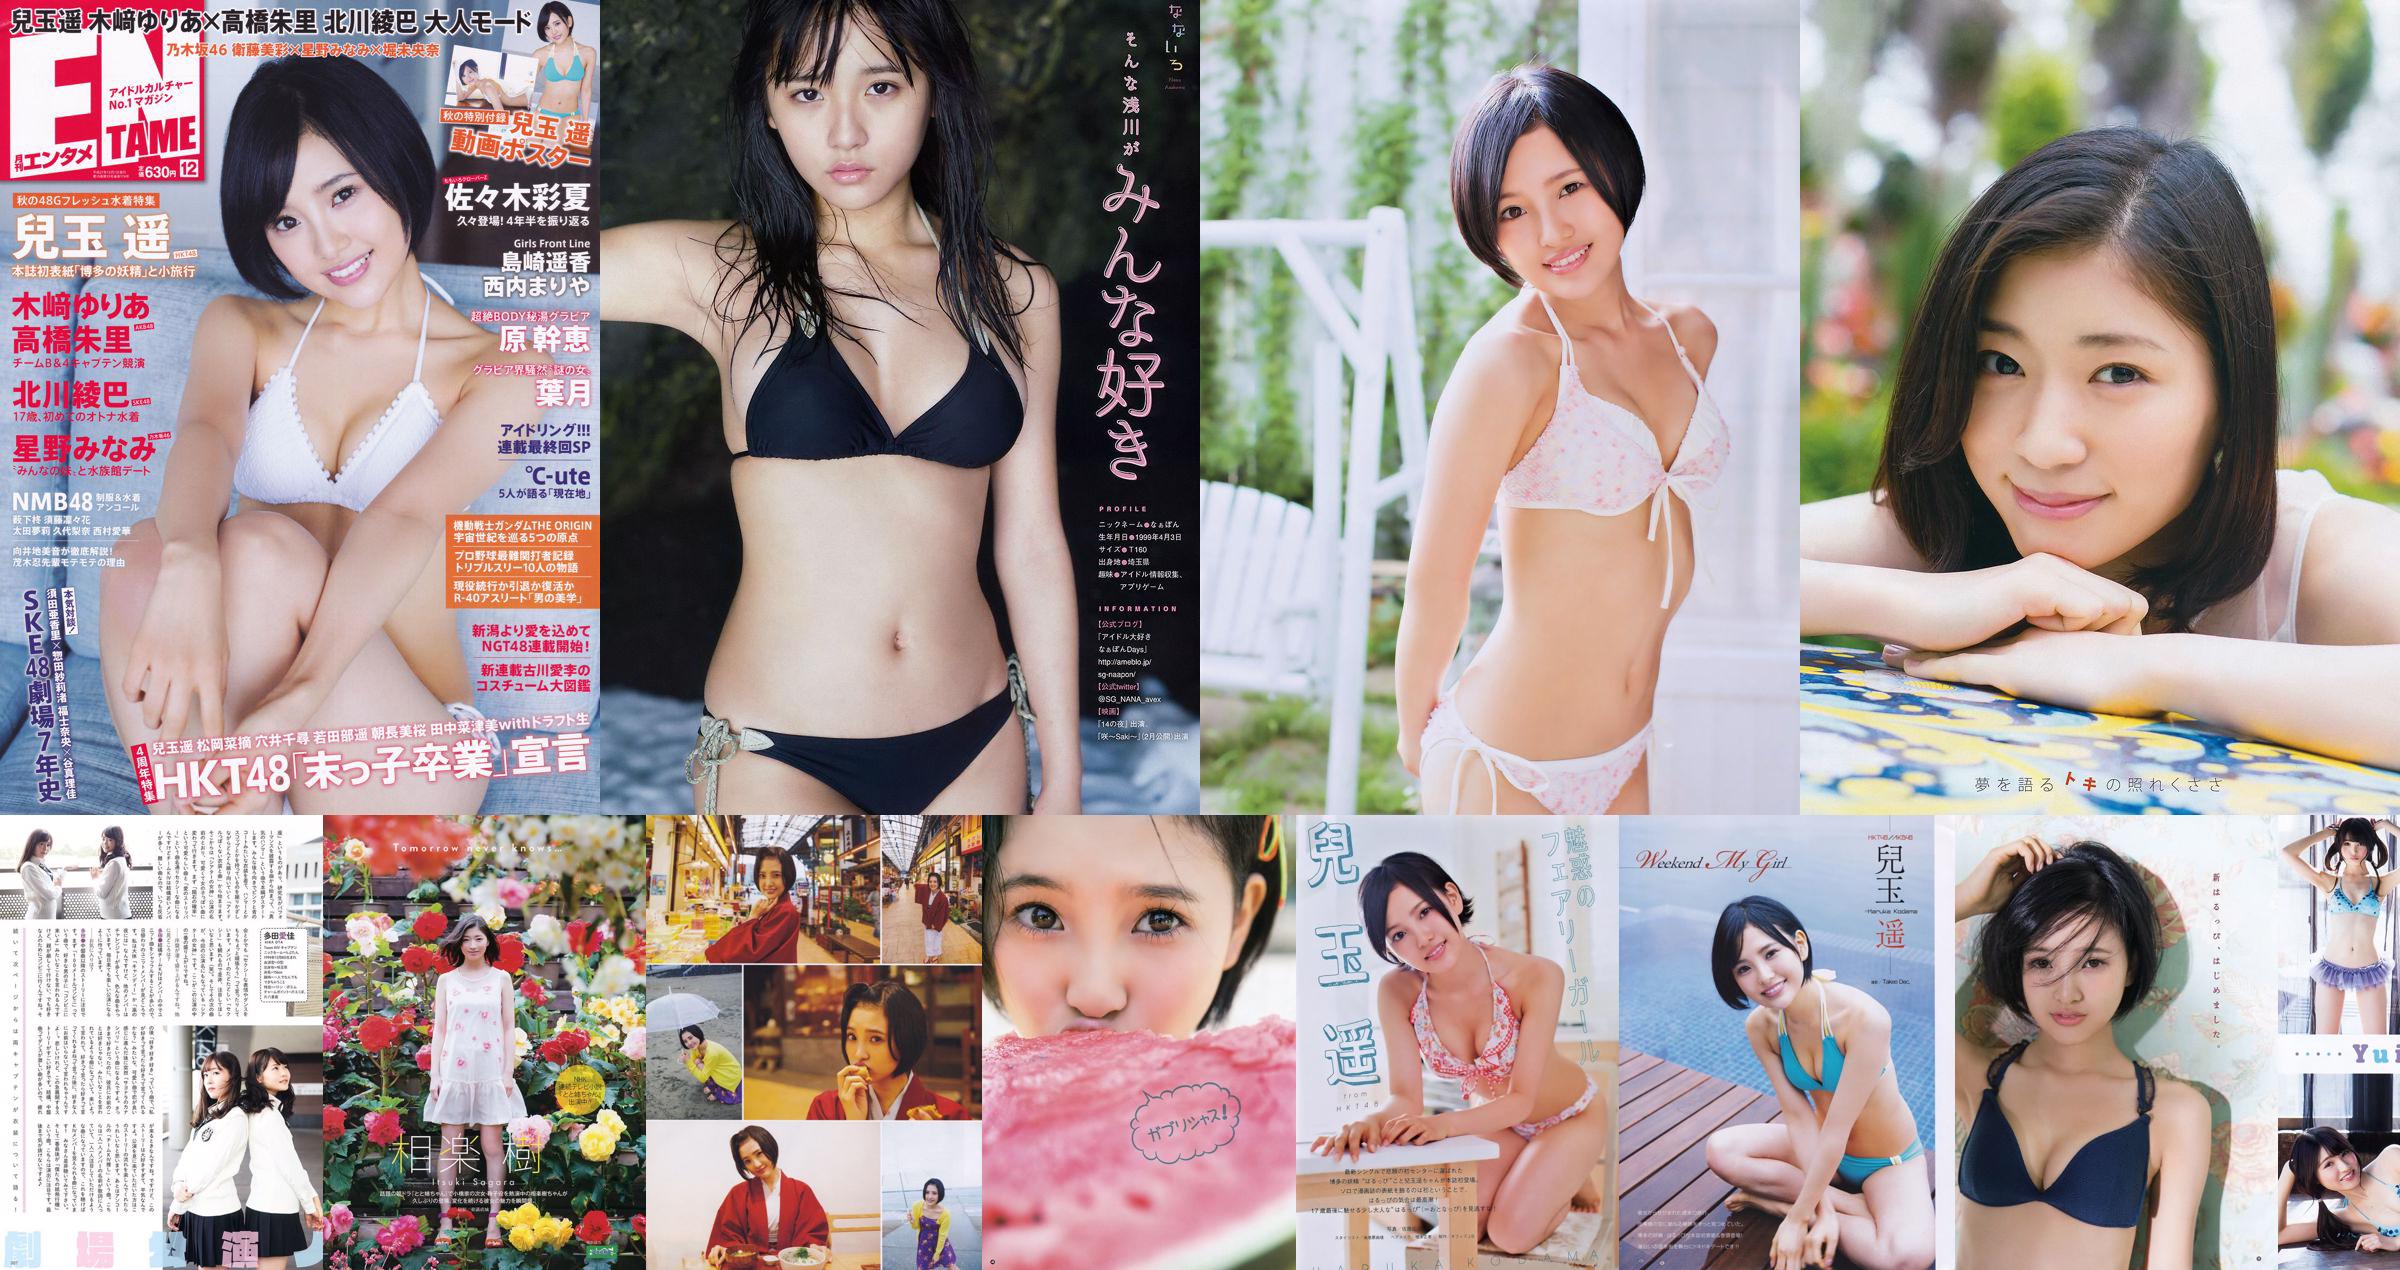 [Young Gangan] Haruka Kodama Itsuki Sagara 2016 No.11 Photo Magazine No.327062 Pagina 1